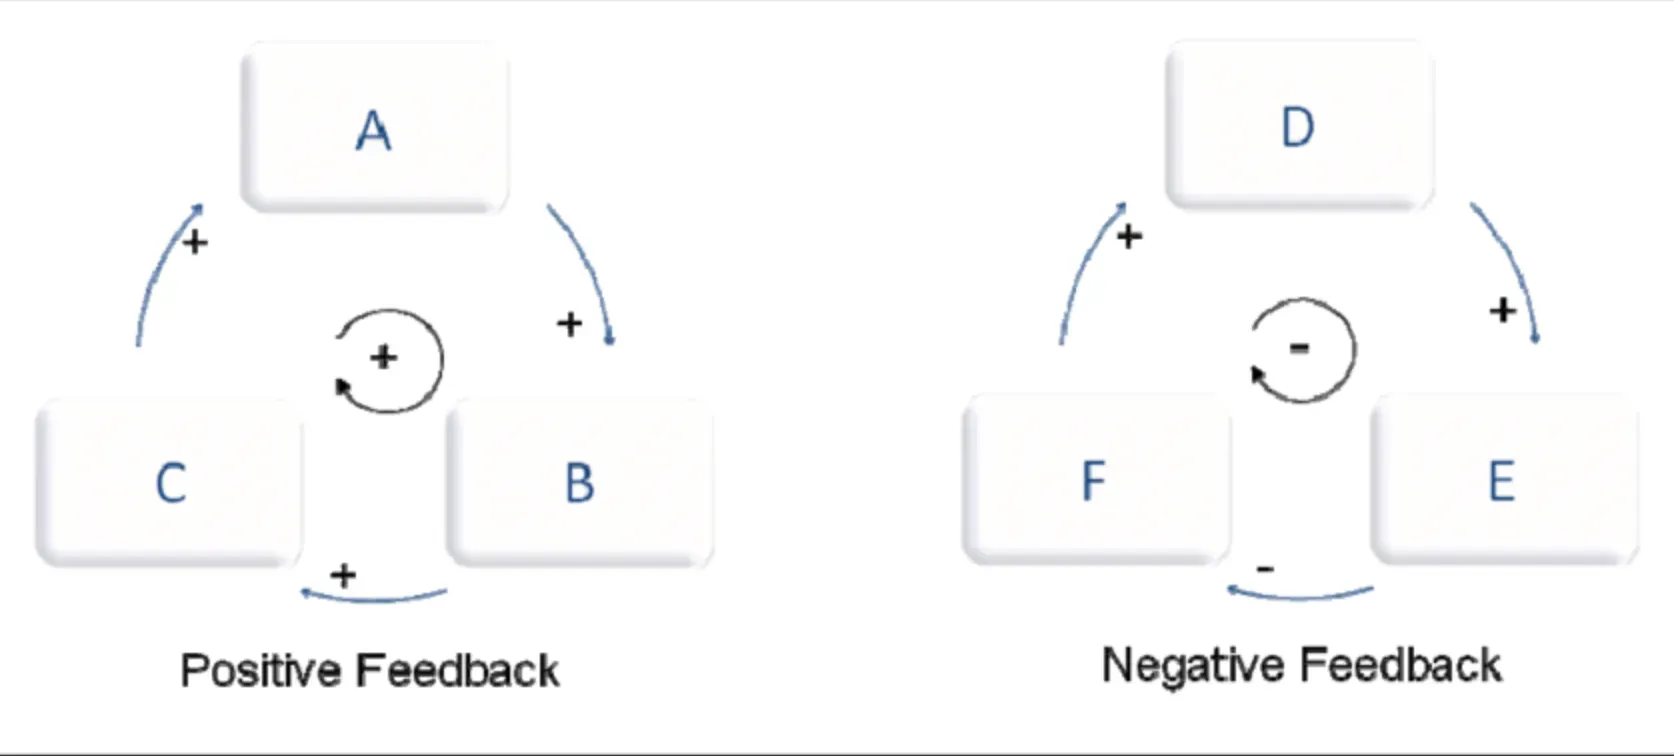 Categories of Feedback Loops